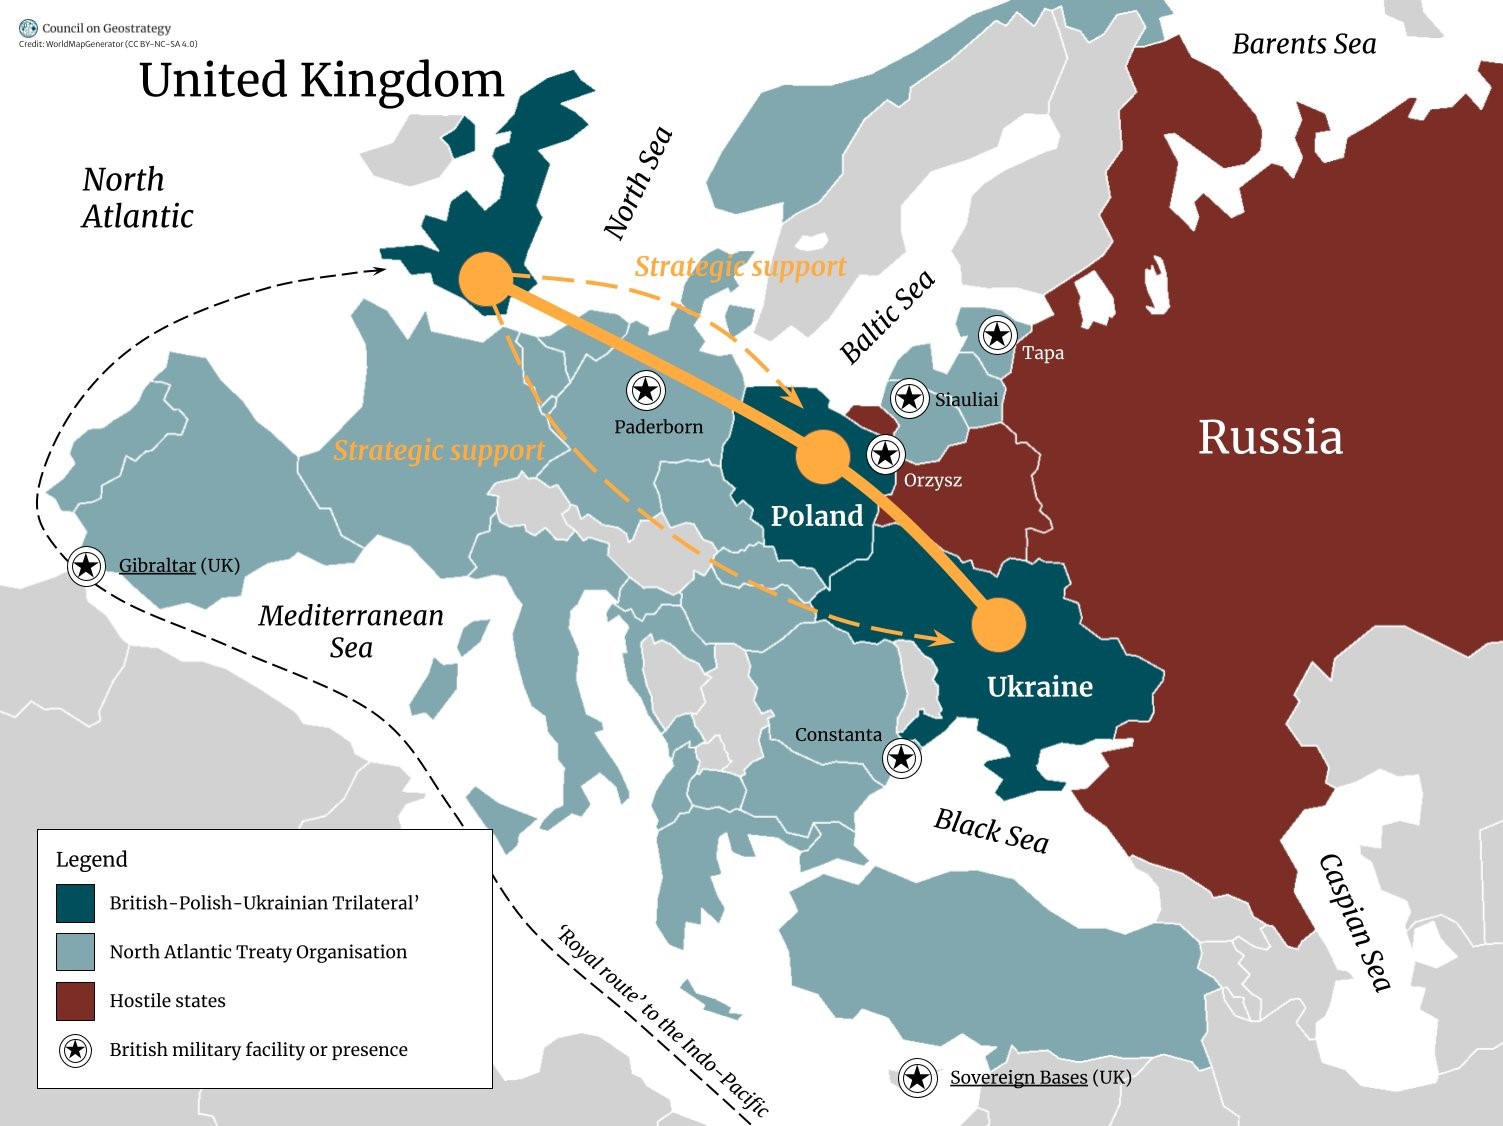 "Прикрыть восточный фланг НАТО". Альянс Украины, Польши и Британии: все, что известно